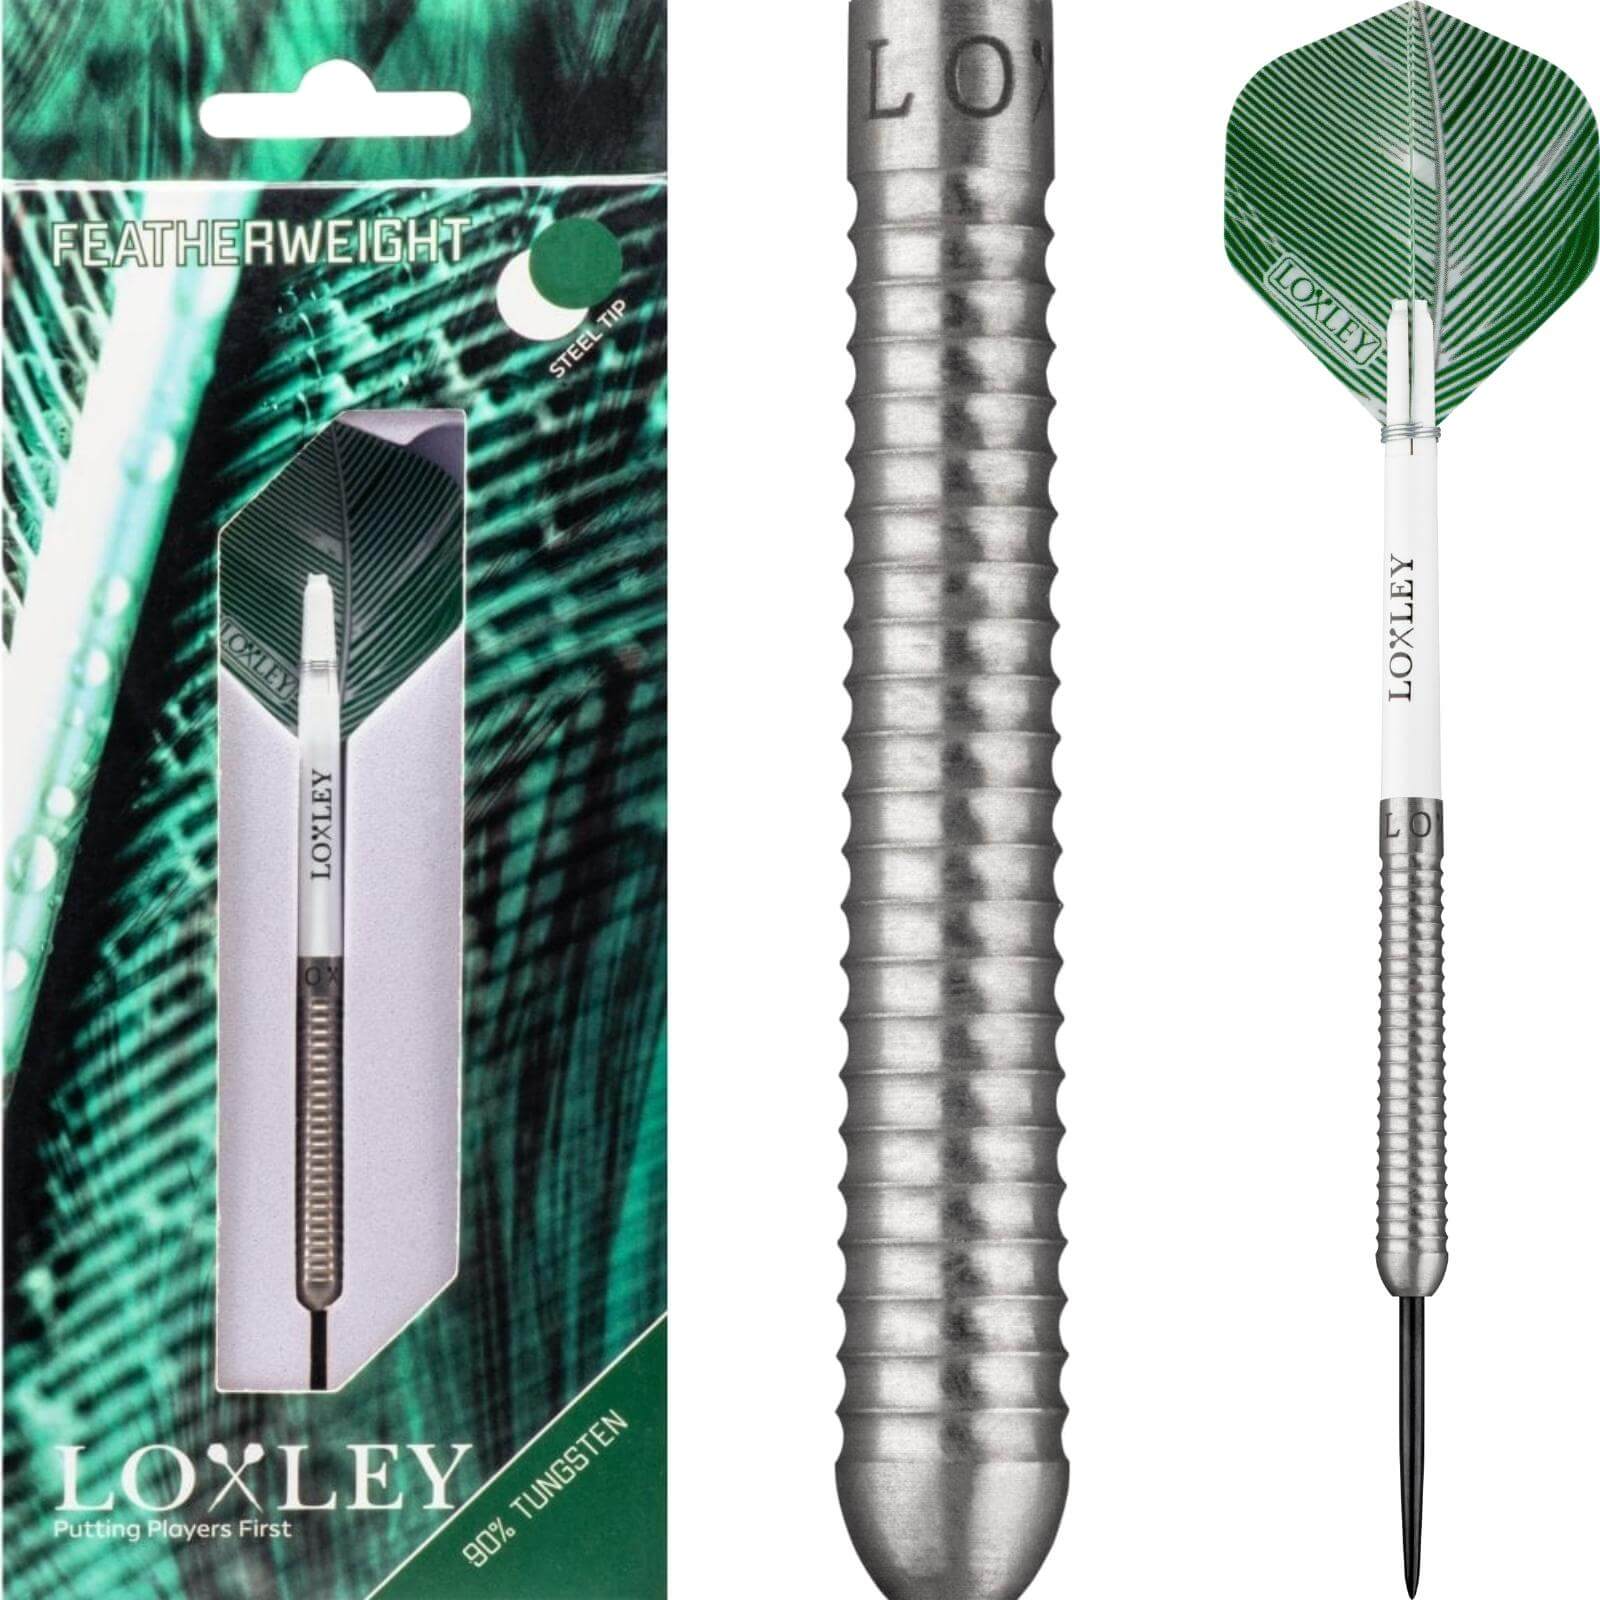 Darts - Loxley - Featherweight Darts - Steel Tip - 90% Tungsten - 19g 